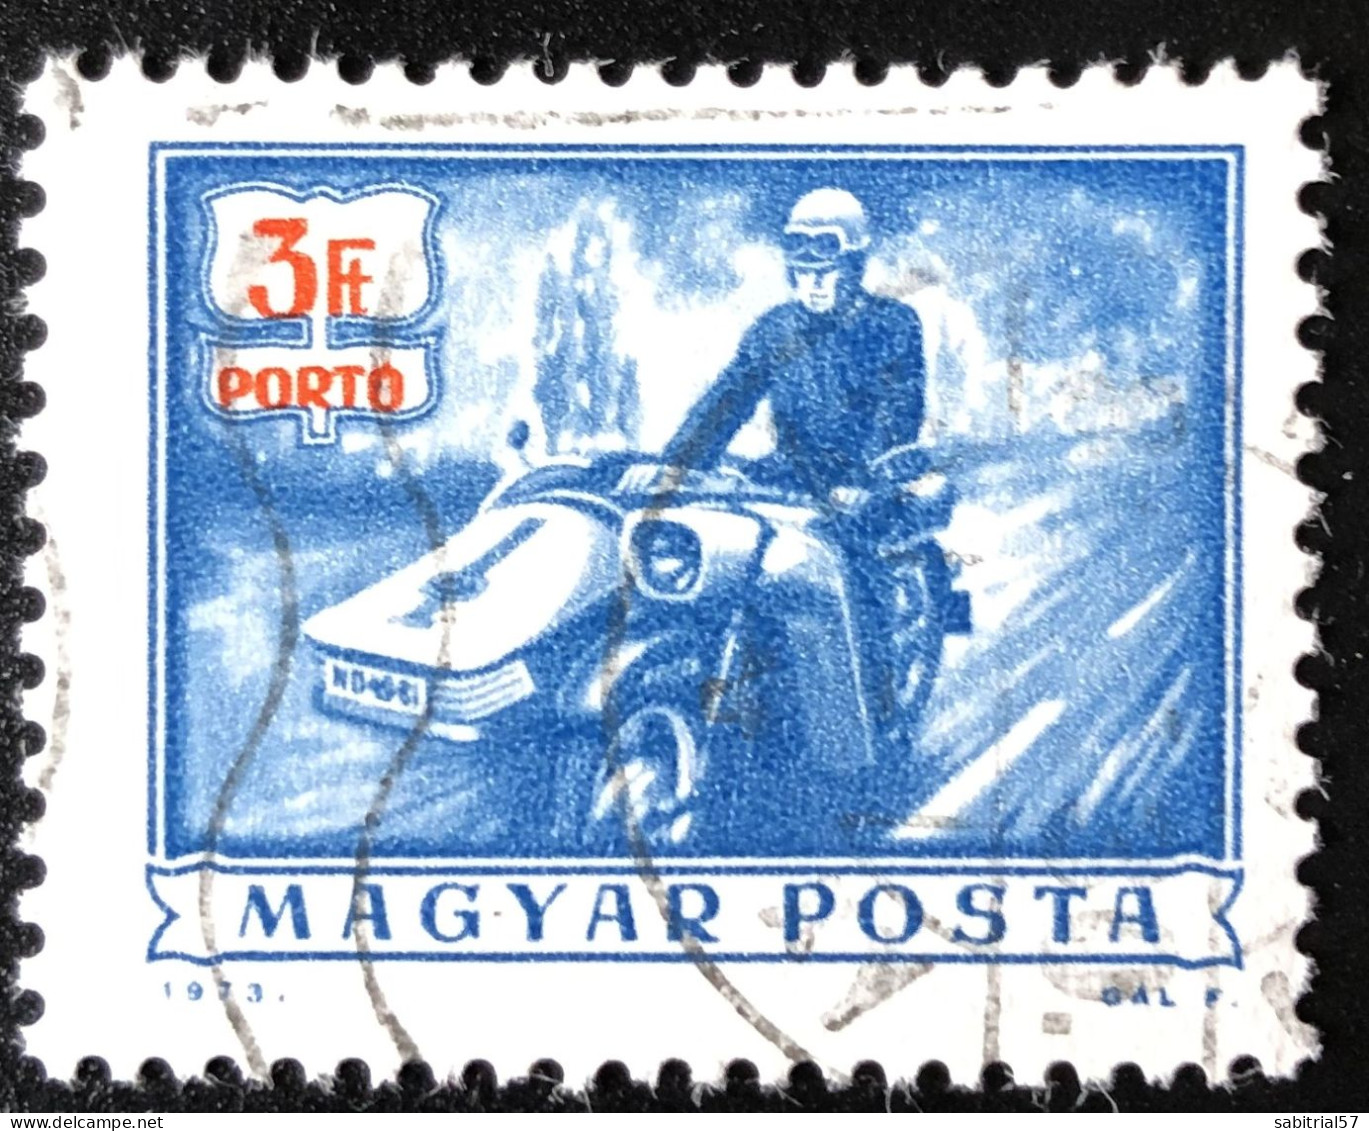 Hungria 1973 / Postman/ Sidecar / Hungary / Hongrie / Motorcycles / Motociclettes / Motorräder - Motorräder